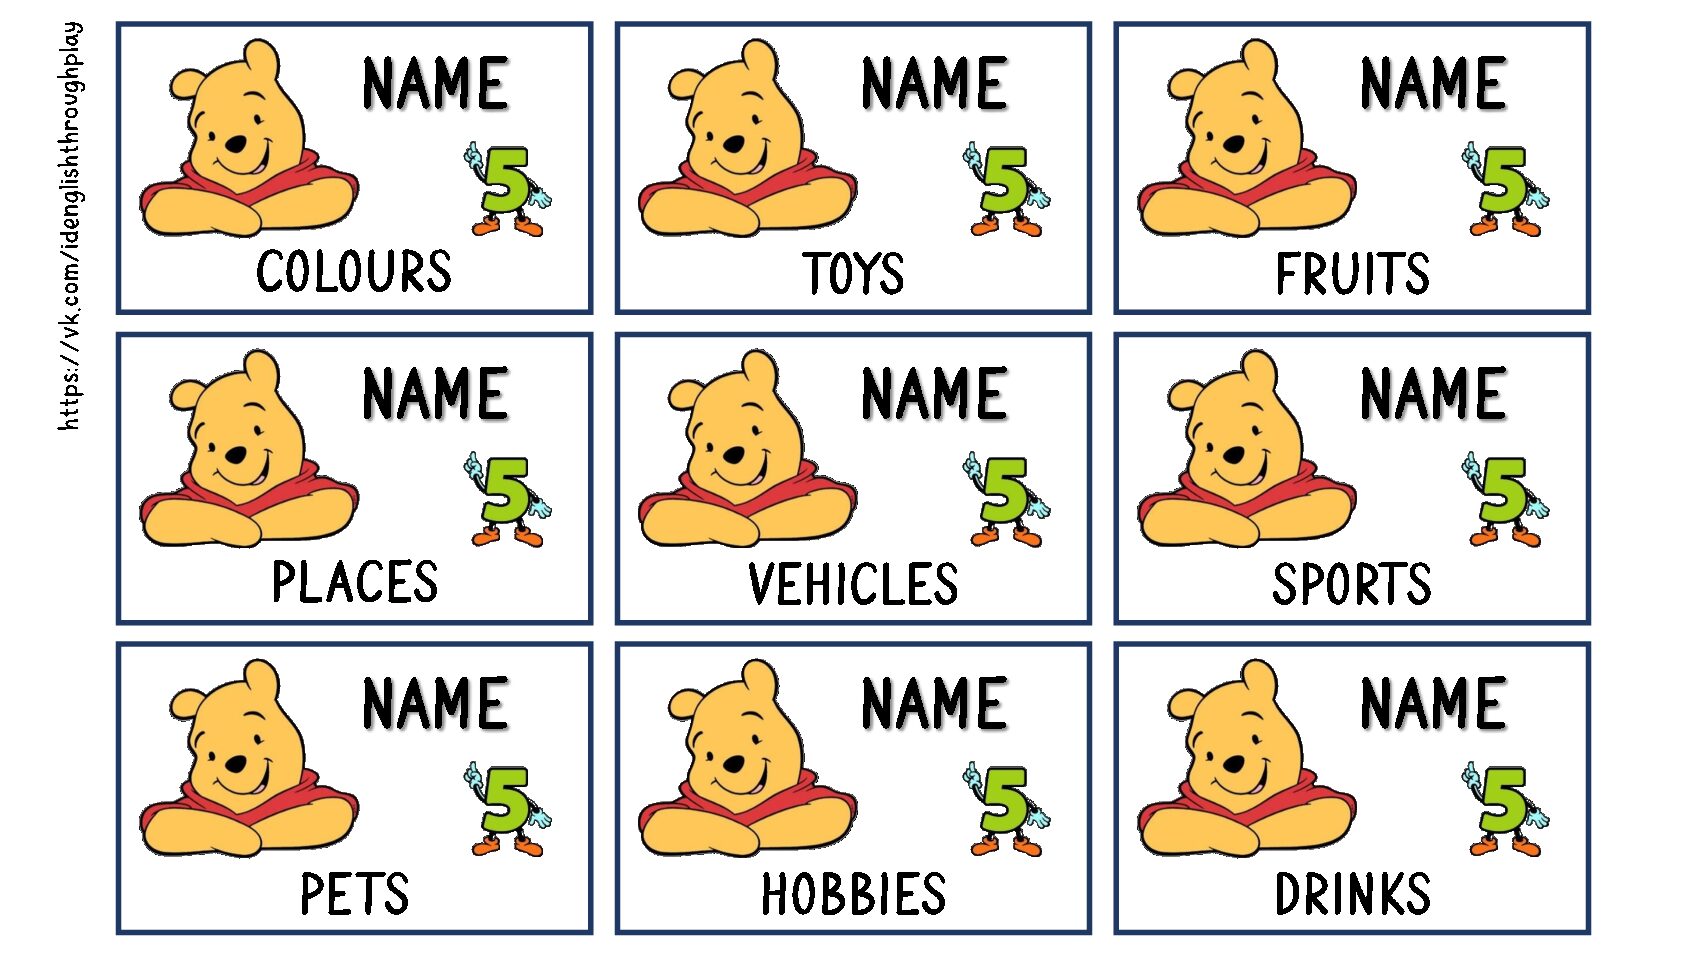 Name 5 pets. Name 5 game for Kids. Name 5 things. Name 5 things game. Name 5 things game Cards.